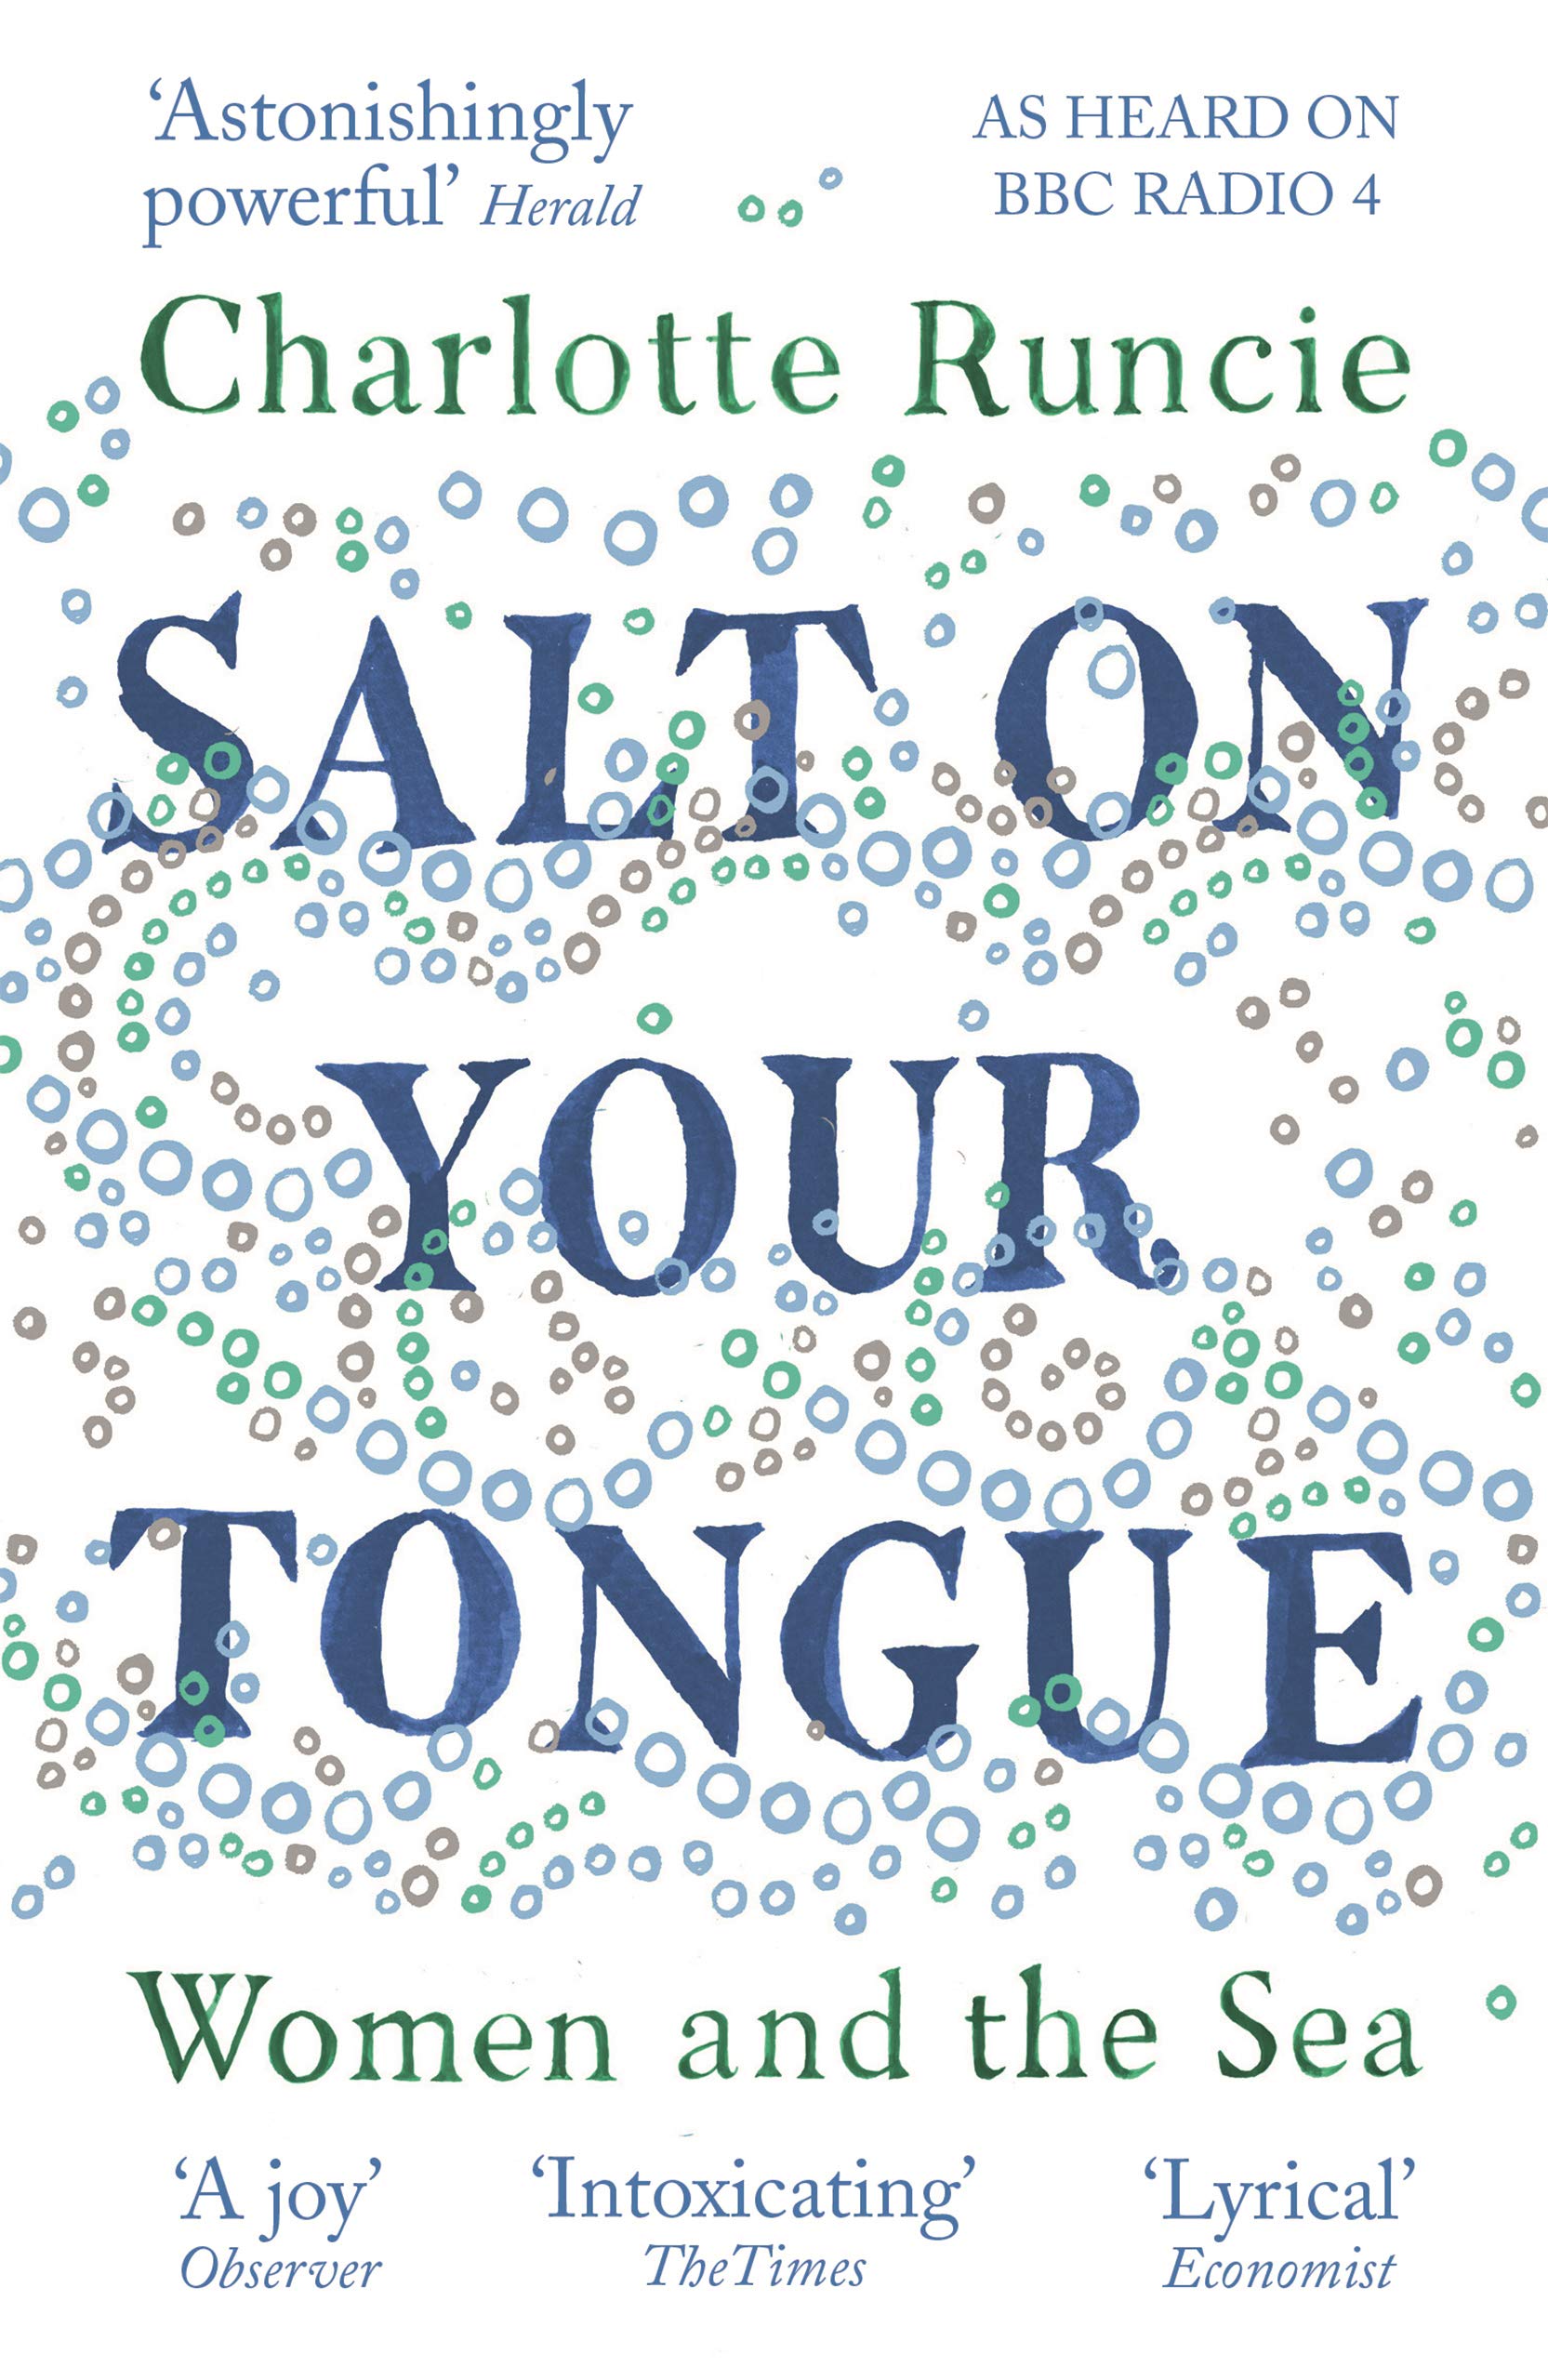 Salt On Your Tongue | Charlotte Runcie